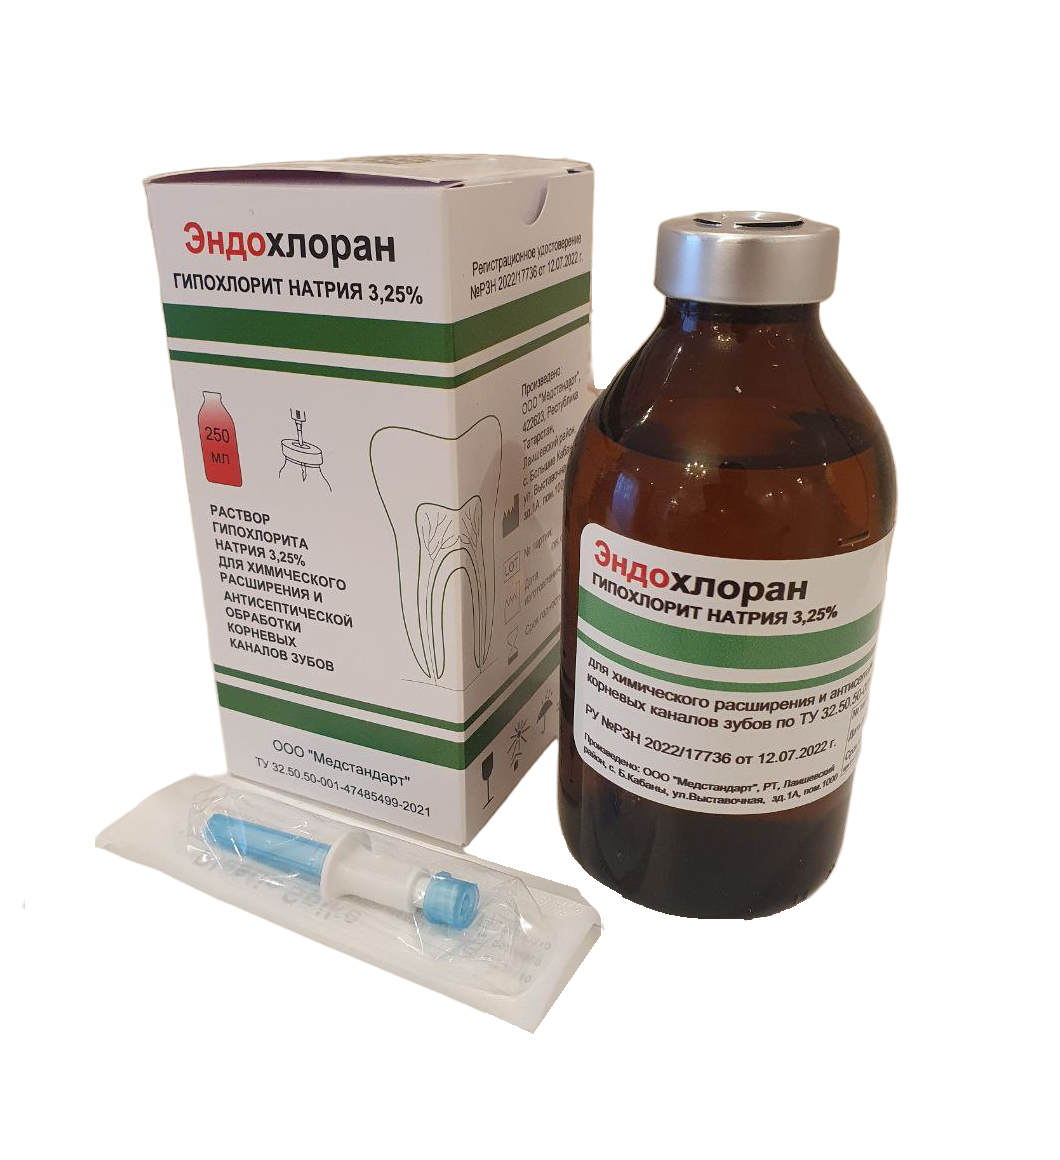 Эндохлоран - раствор гипохлорита натрия 3,25%, 250мл купить